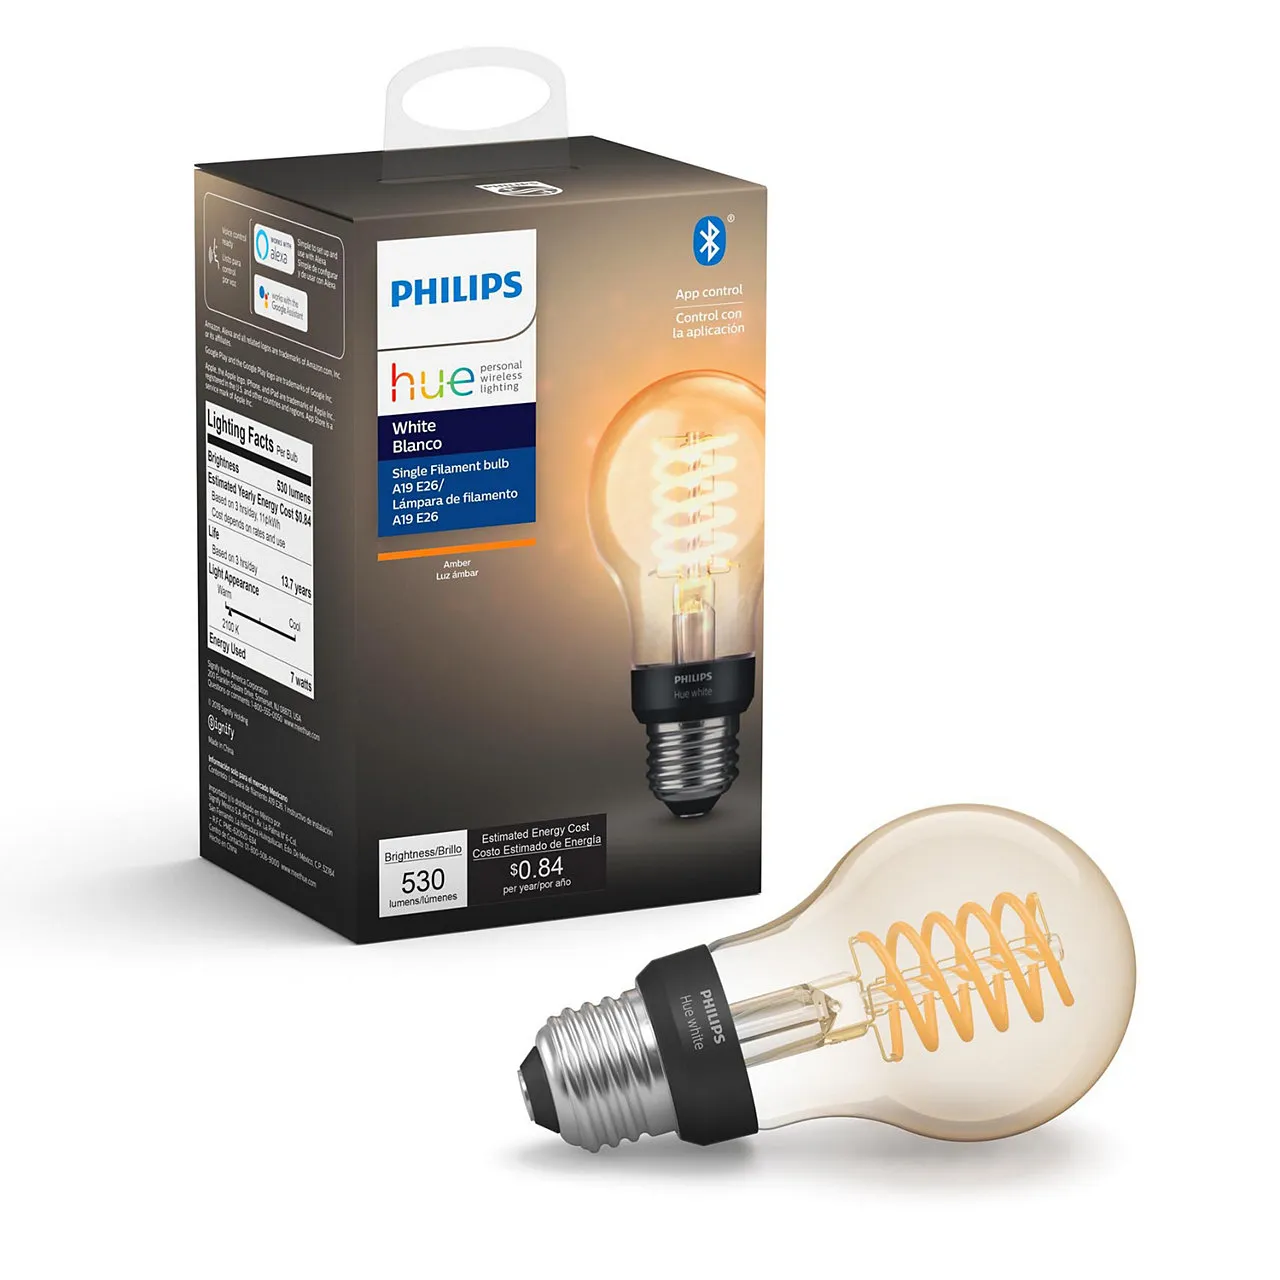 Hue White Filament Bulb A19 E26 Bluetooth